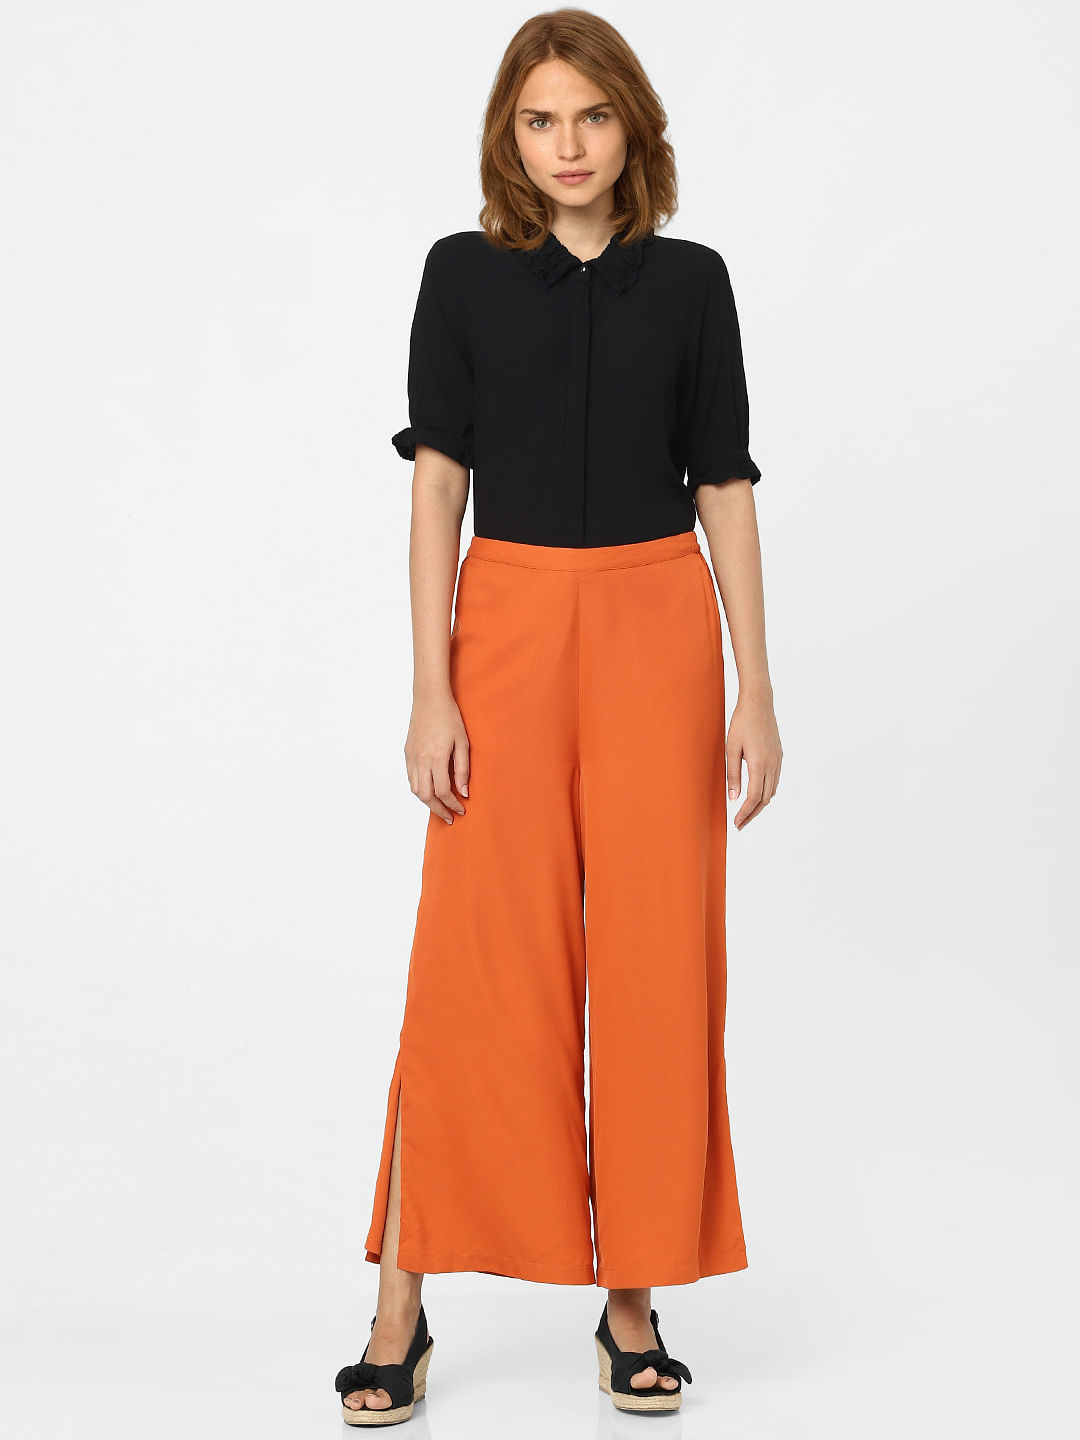 Buy Orange Trousers  Pants for Women by Twin Birds Online  Ajiocom